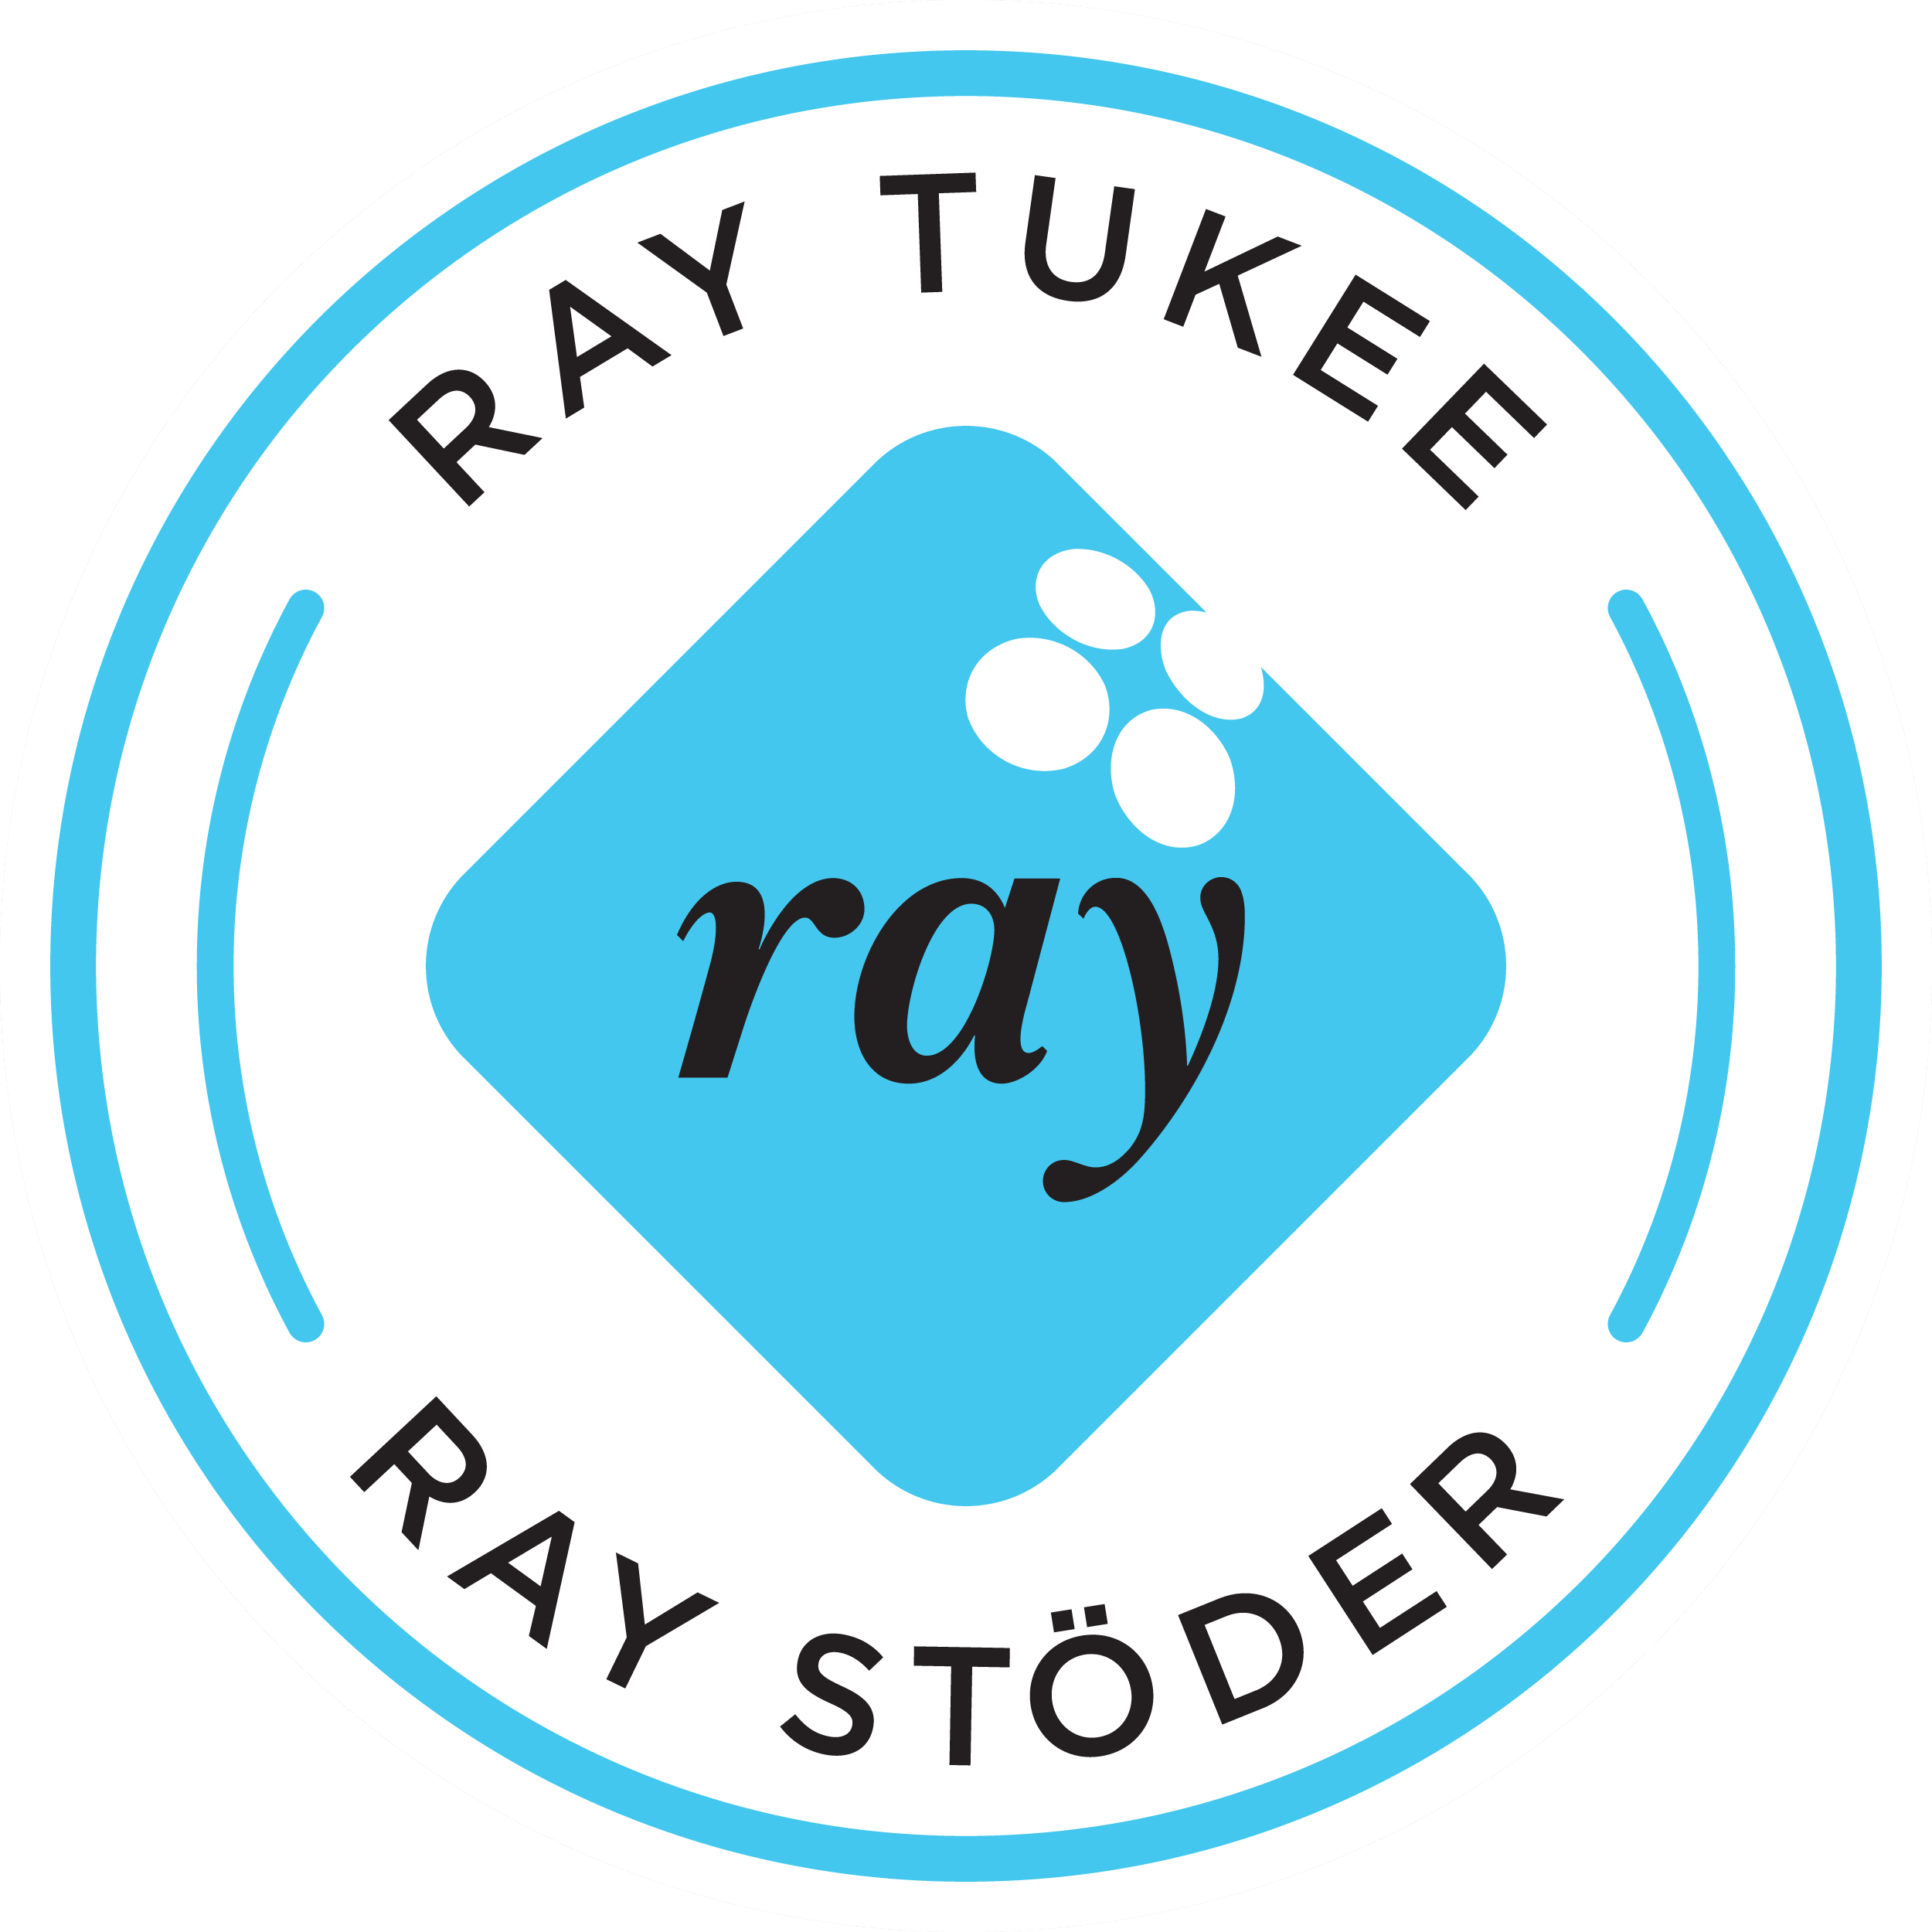 RAY logo